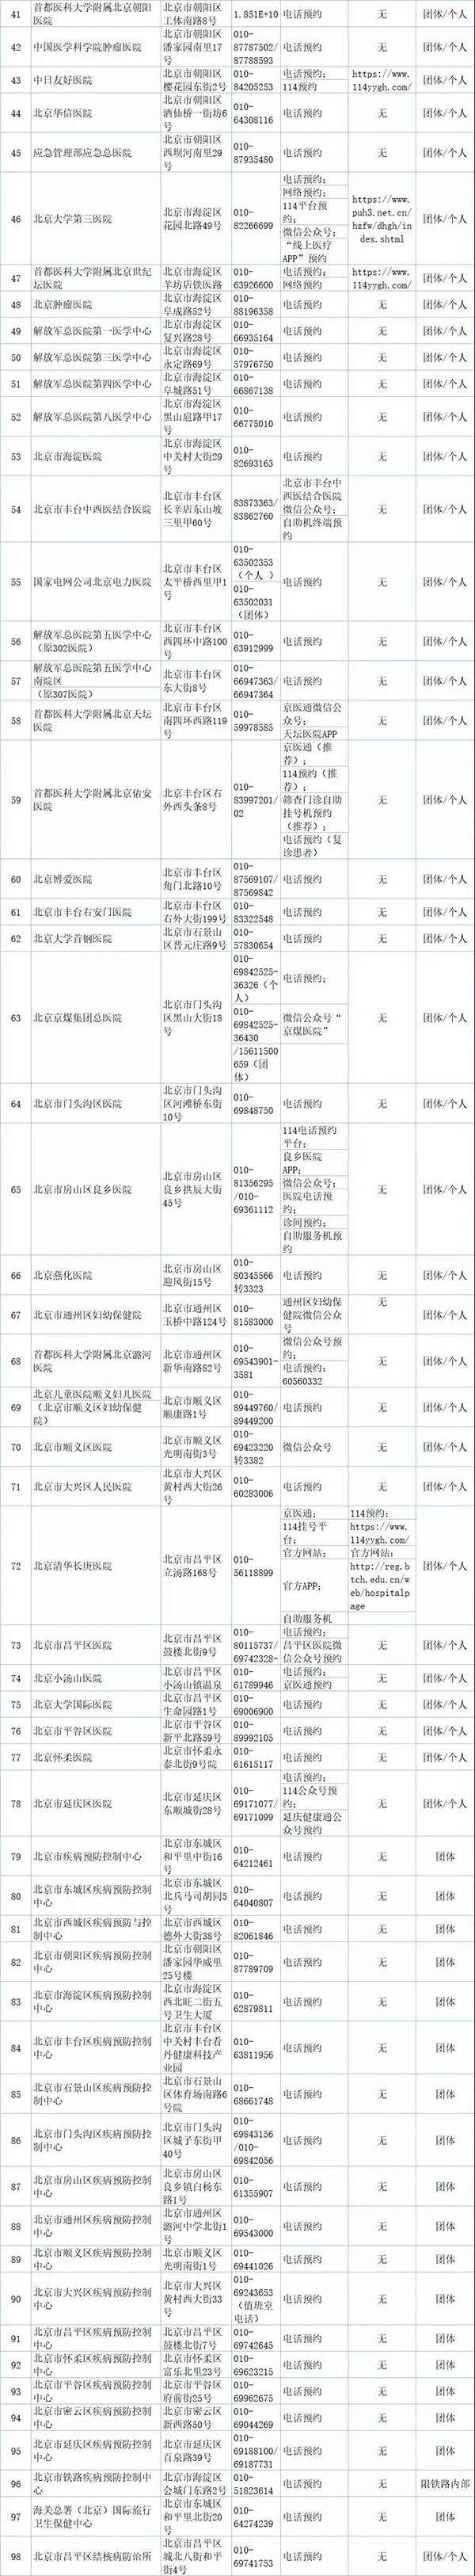 北京98所医疗卫生机构可提供核酸检测服务